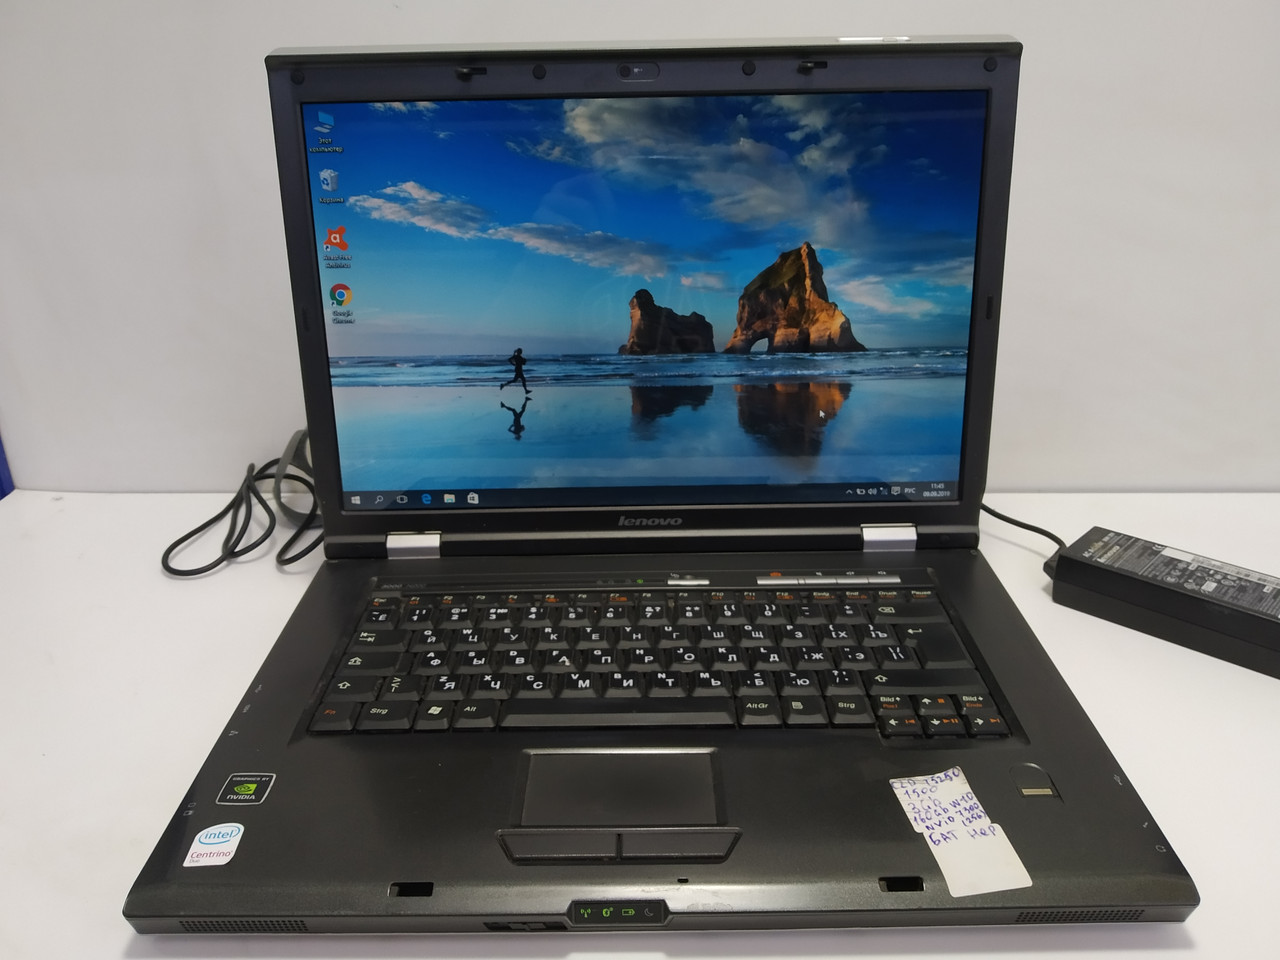 Lenovo ThinkPad 3000 N200 \web-camera\ Intel 2 ядра T5250 1.5  \ 2 ГБ ОЗУ \ 160 ГБ HDD